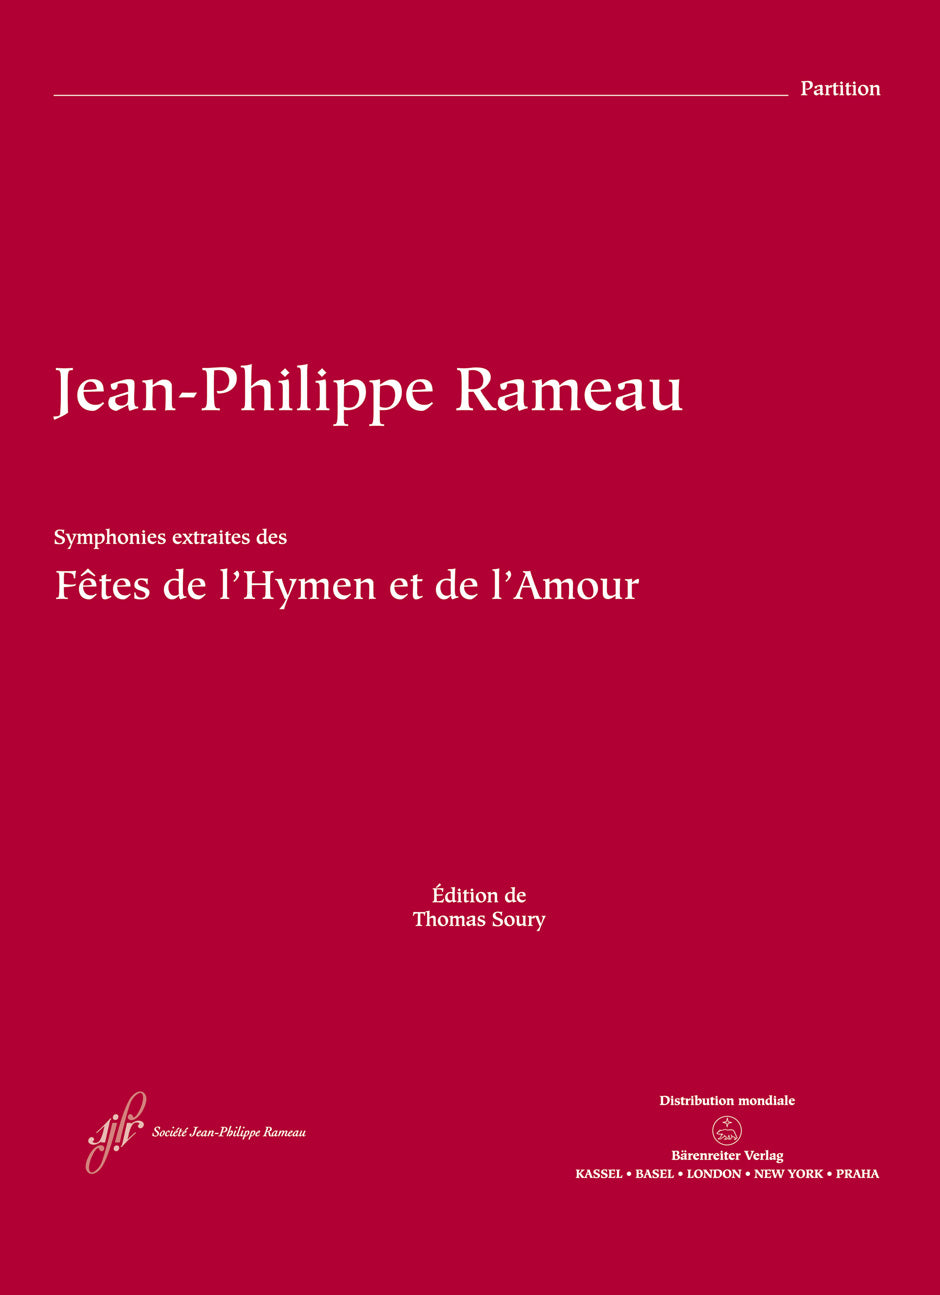 Rameau Les Fêtes de l'Hymen et de l'Amour RCT 38